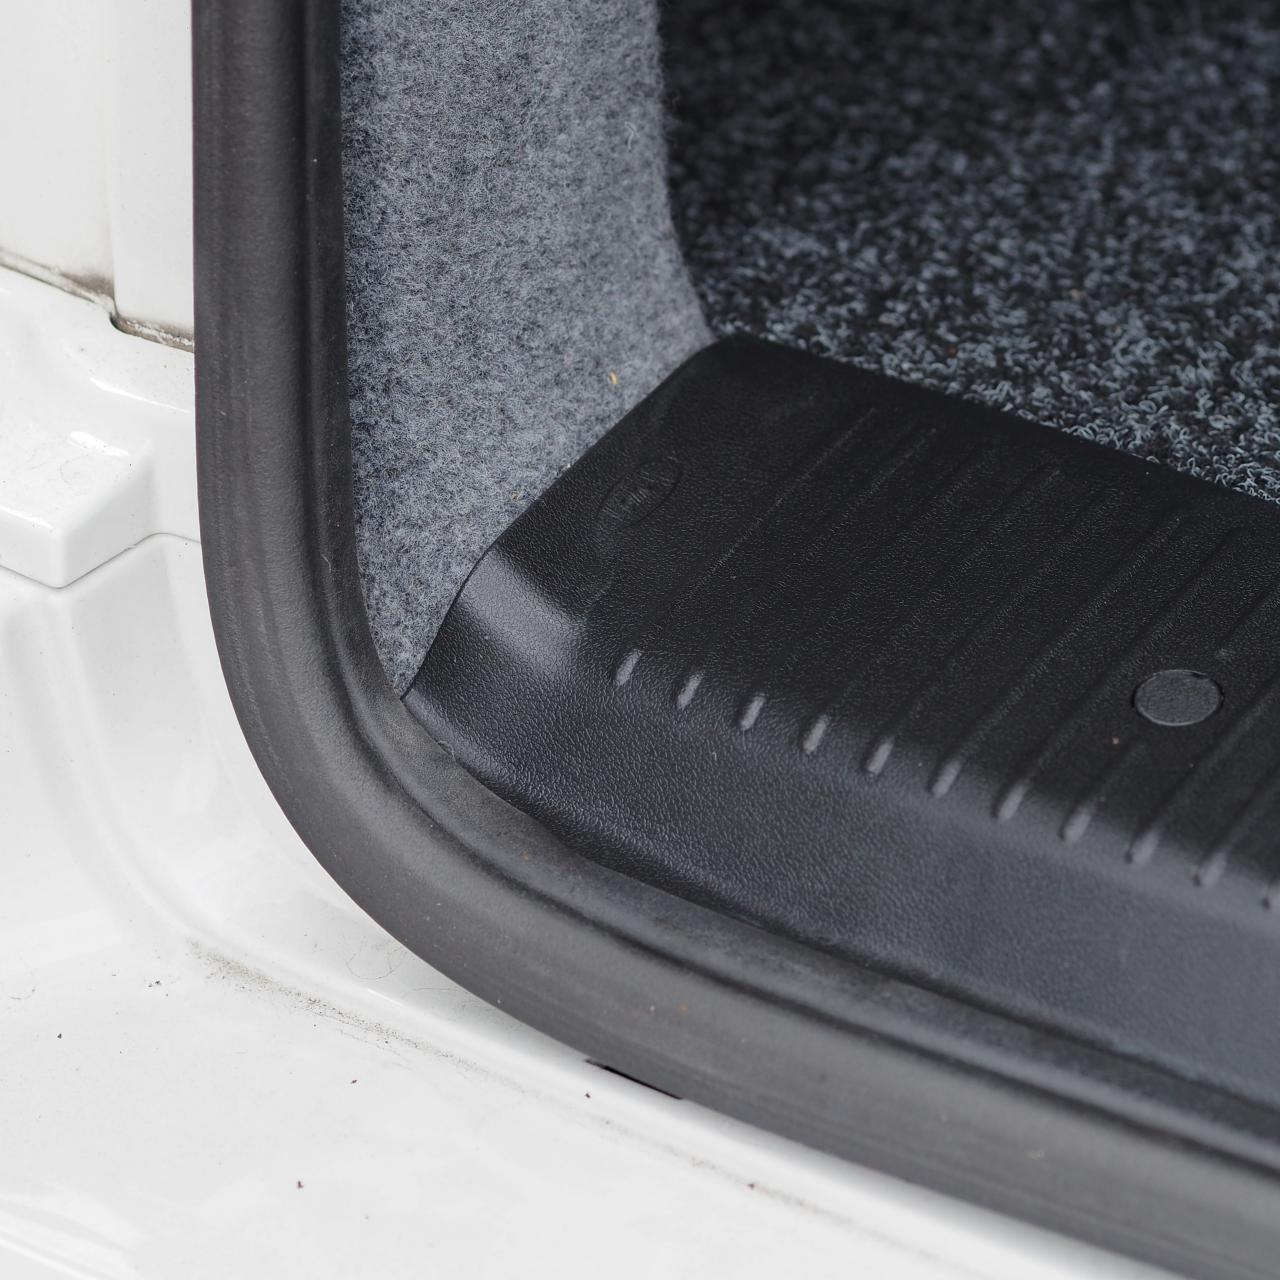 Umbral trasero para VW T6 portón trasero de plástico ABS de longitud completa